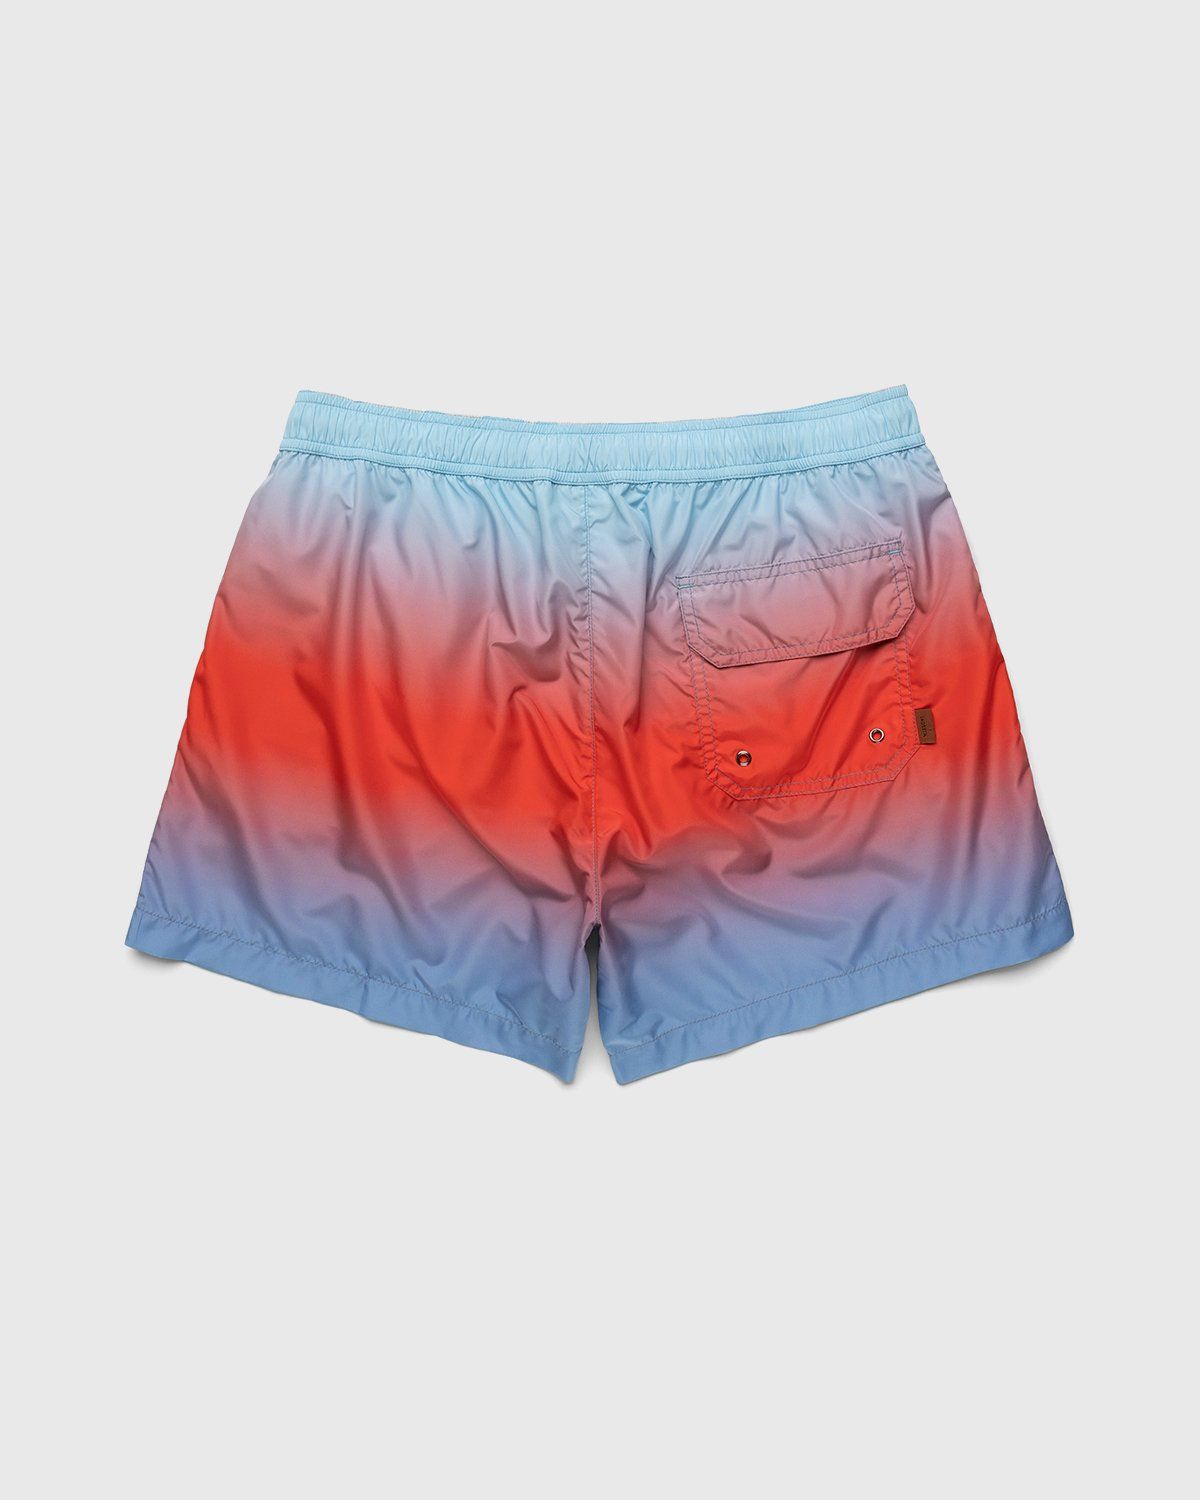 Missoni – Degrade Print Swim Shorts Light Blue - Shorts - Blue - Image 2